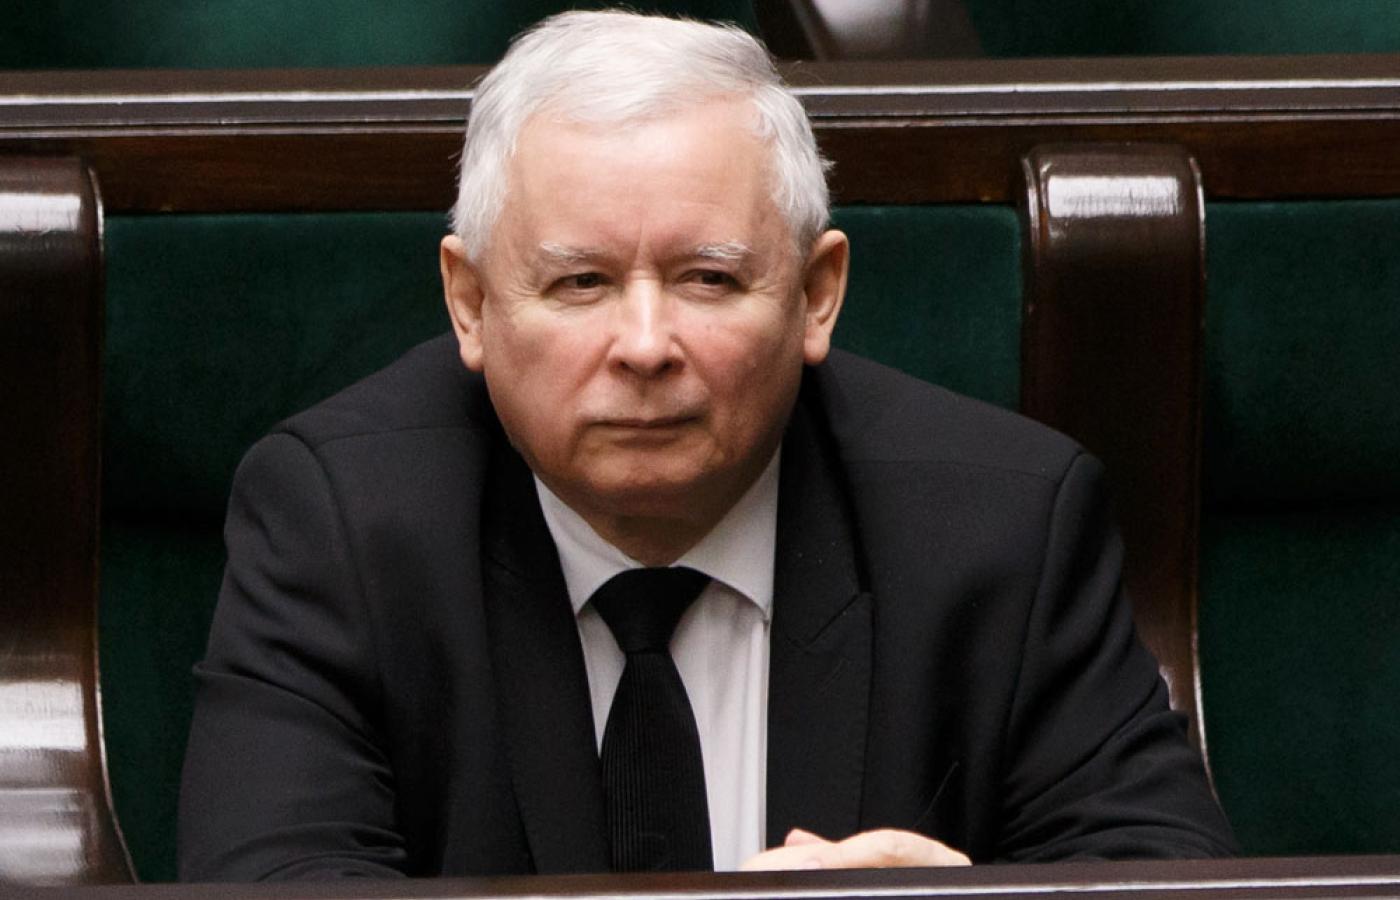 Kaczyński takimi wystąpieniami niszczy polską kulturę polityczną.